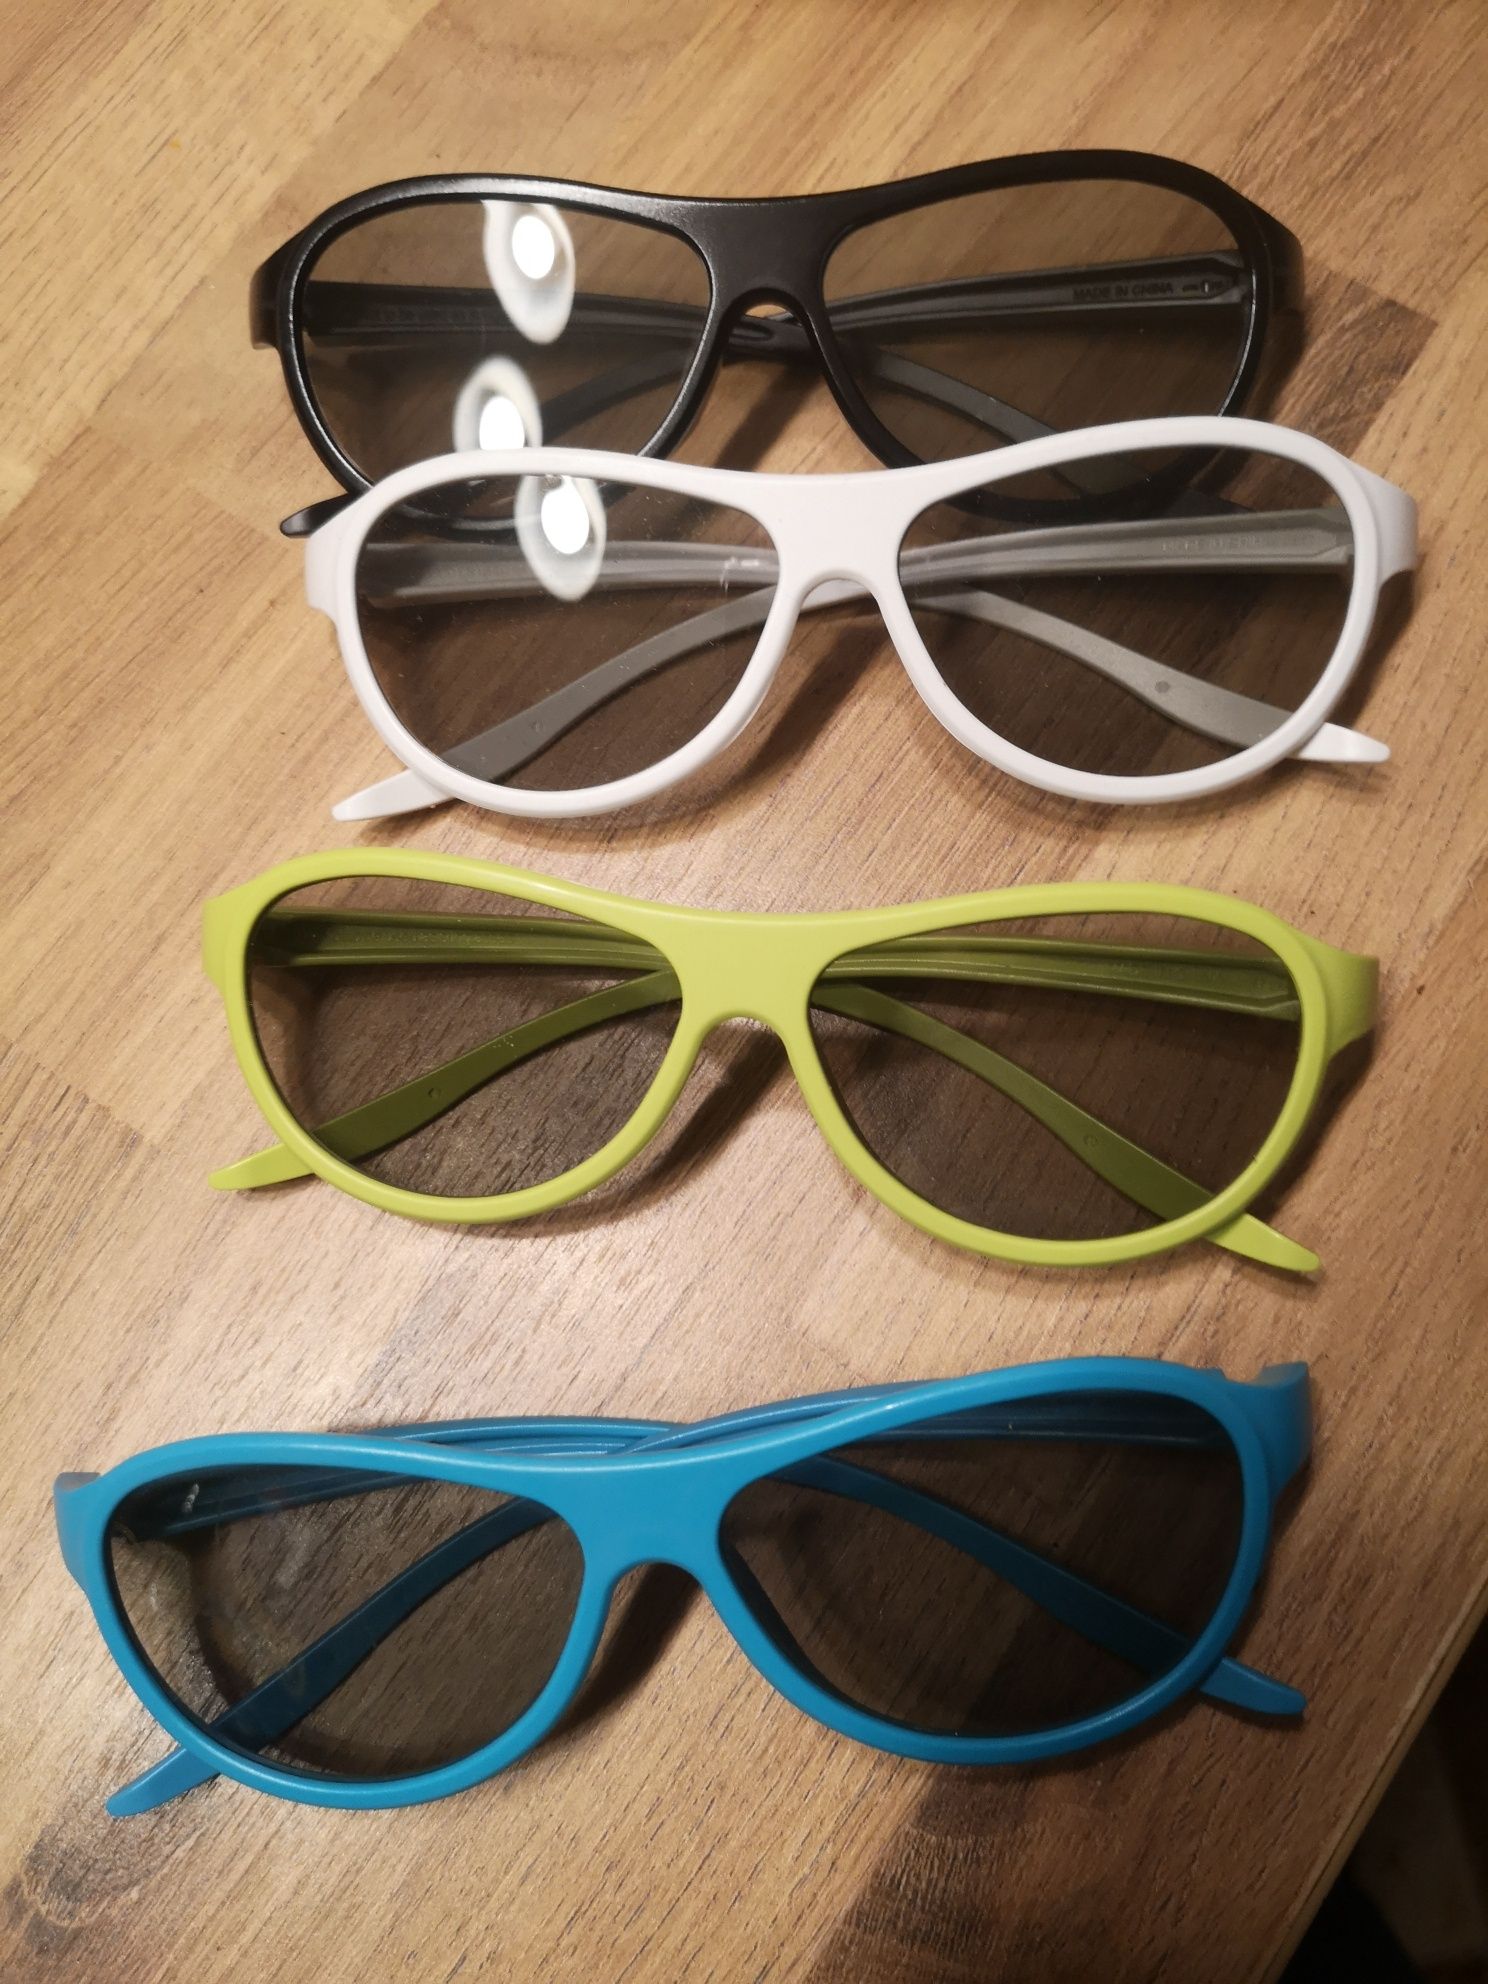 Nowe okulary FIRMY LG. 3 D